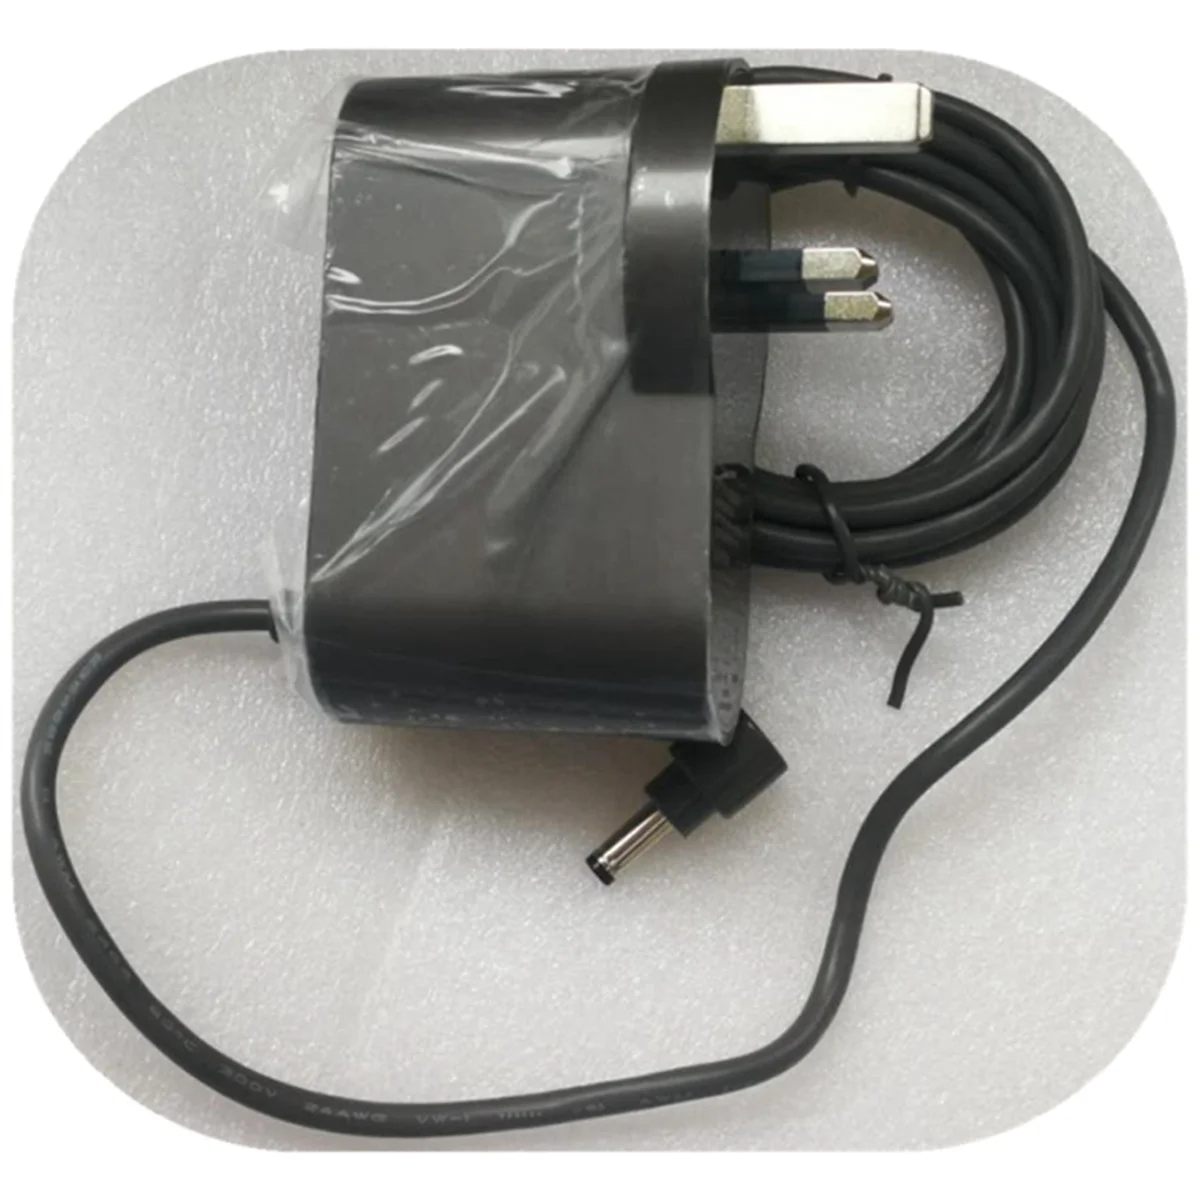 2X Адаптер для зарядного устройства для пылесоса Dyson V10 V11 30,45 В-1,1 А, адаптер питания для пылесоса-вилка из Великобритании